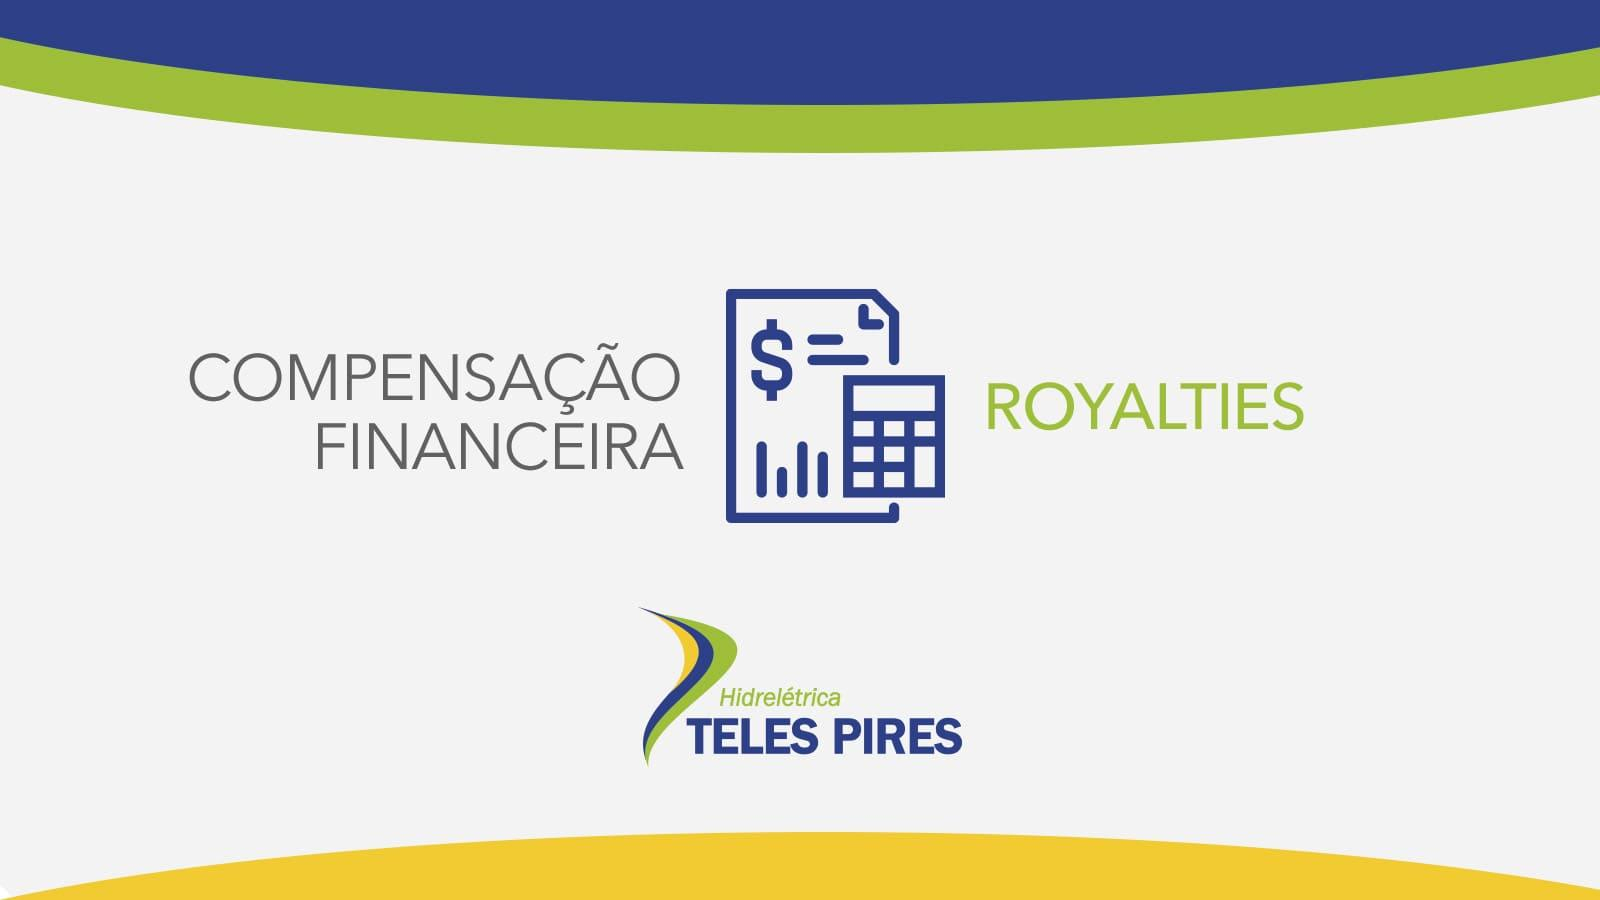 Junho 2020 – Compensação Financeira UHE Teles Pires – Jacareacanga/PA e Paranaíta/MT